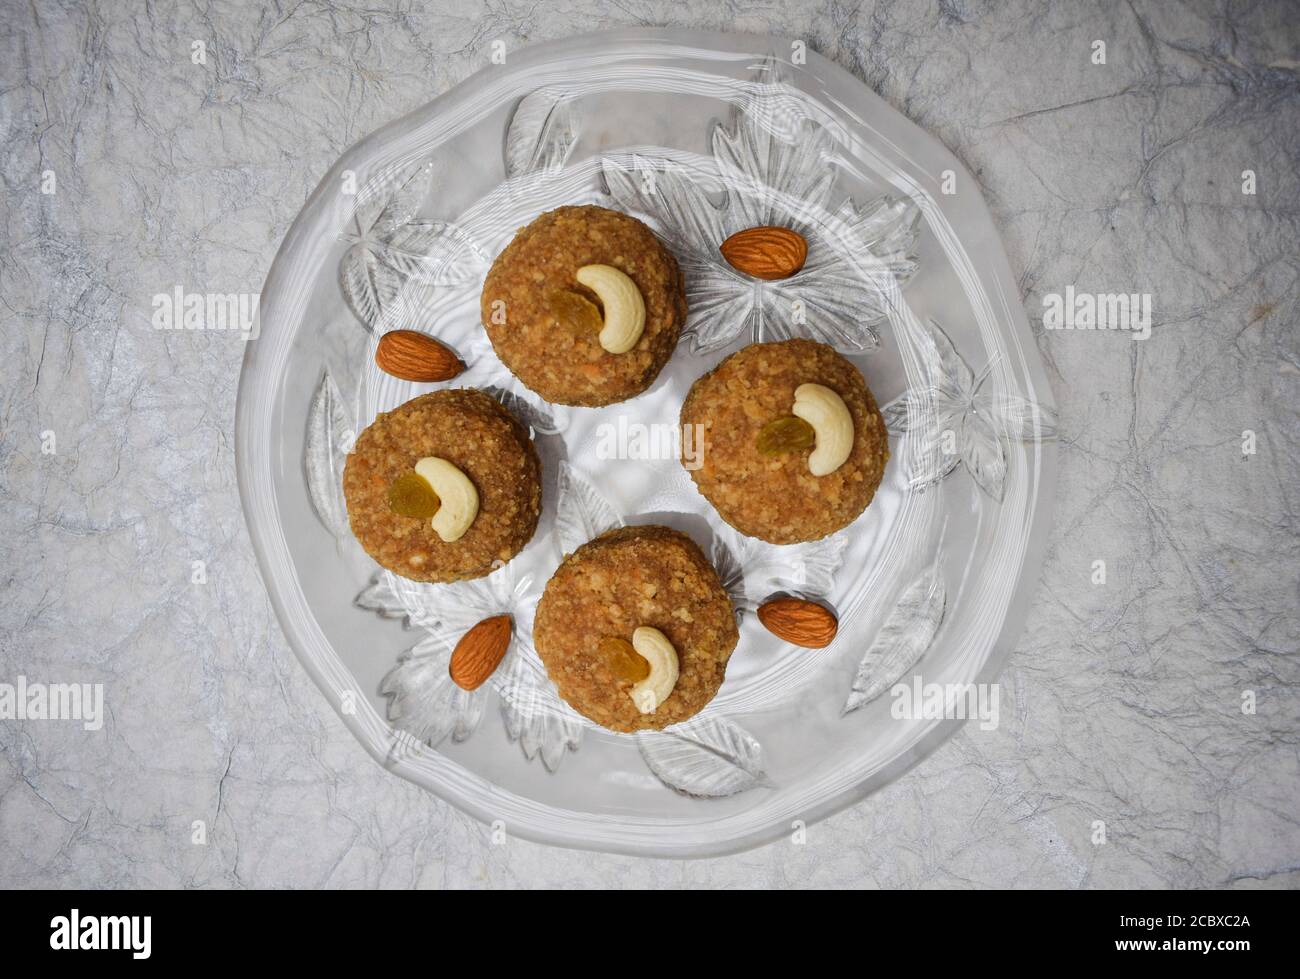 Vue de dessus de Laddu, ladoos Indian Sweet Balls sur une assiette de vaisselle transparente décorée d'amandes et de noix de cajou. Pour des festivals comme Ganesh chaturthi Banque D'Images